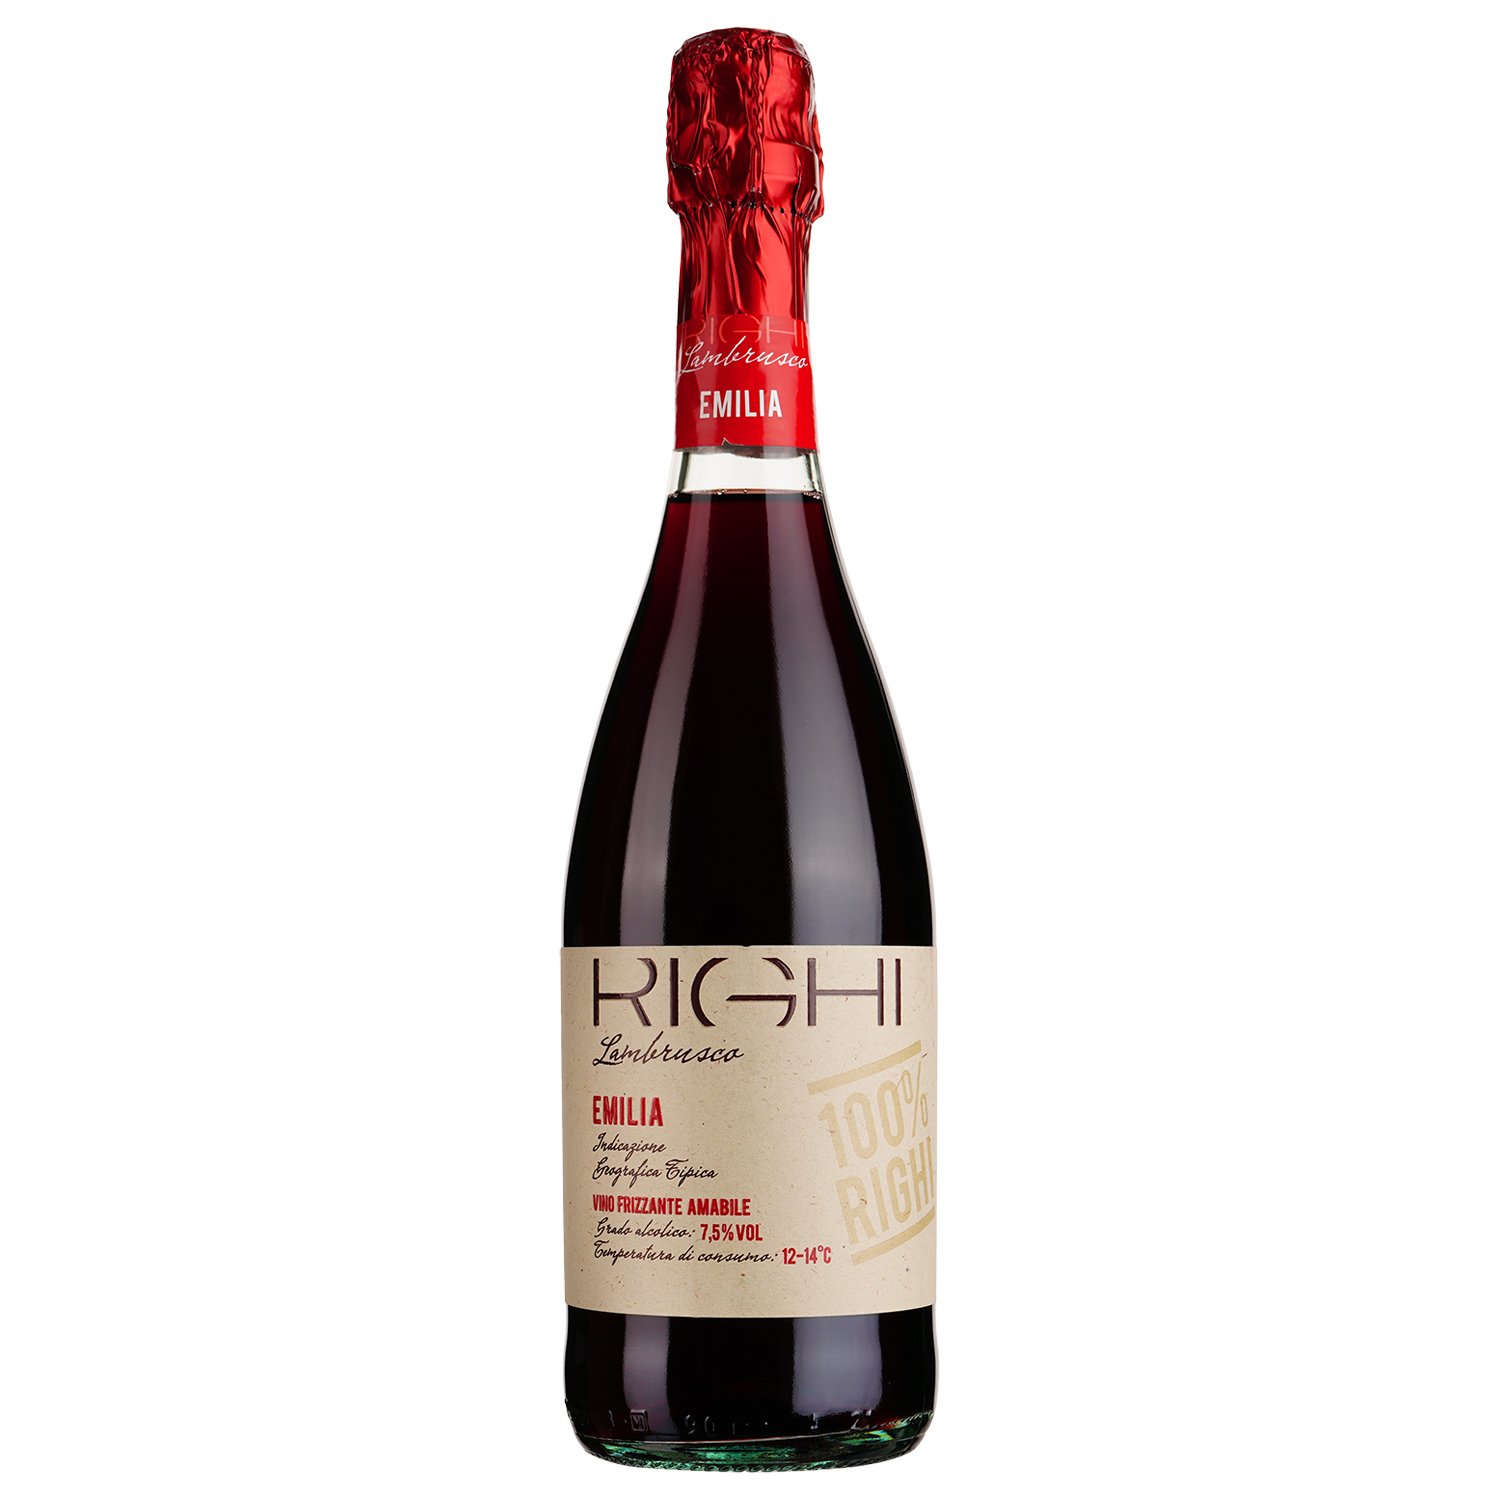 Ігристе вино Righi Lambrusco Emilia IGT, червоне, напівсолодке, 7,5%, 0,75 л - фото 1